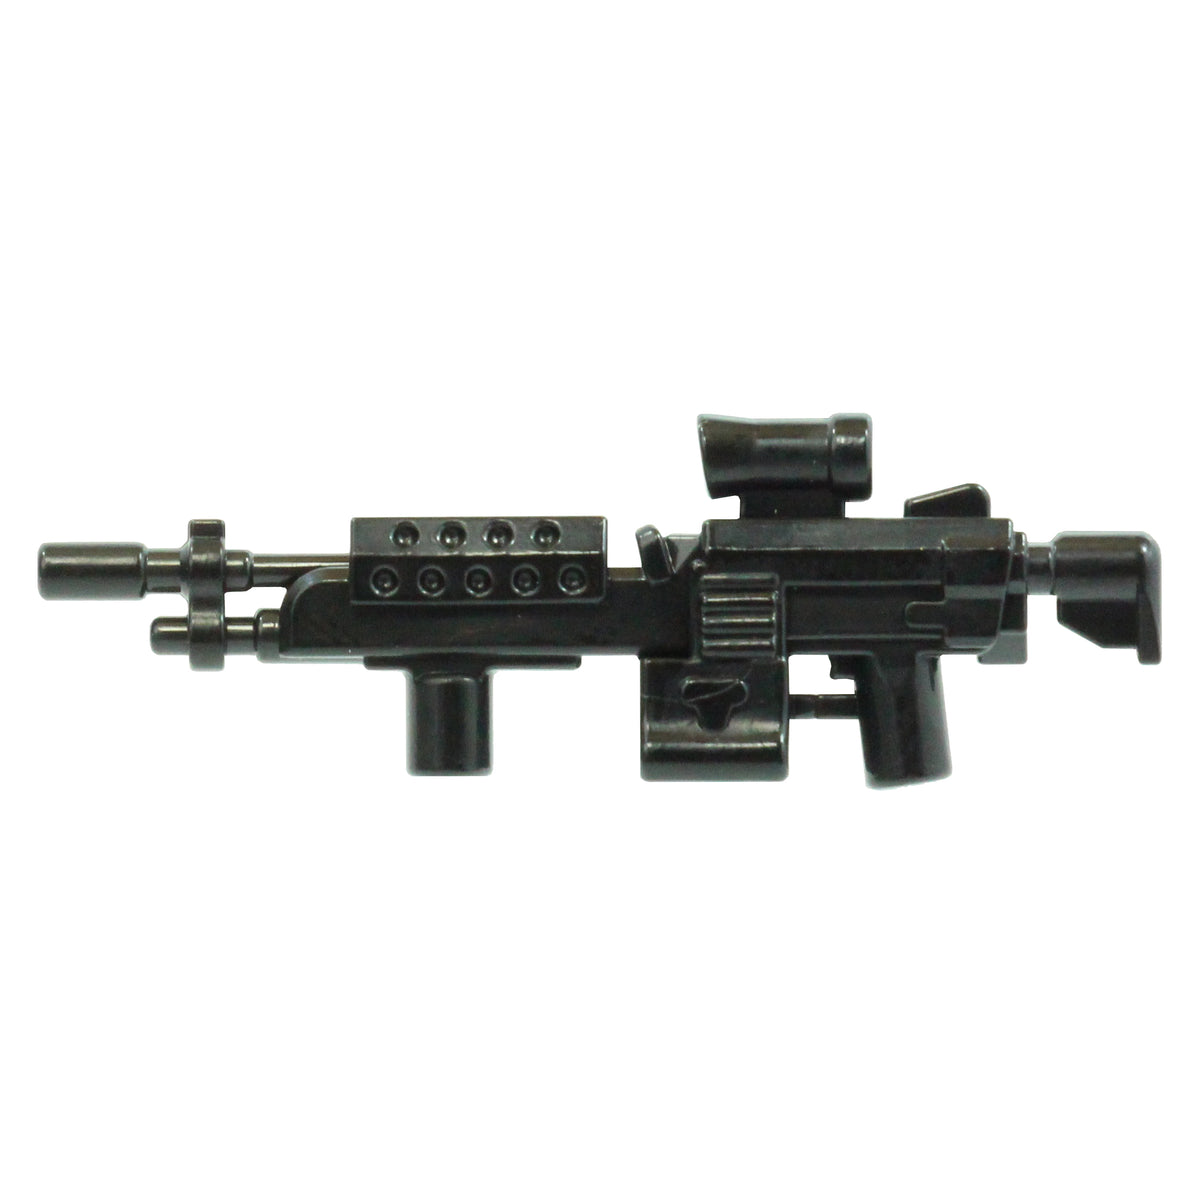 Modular .50 Cal Sniper Rifle – BrickTactical